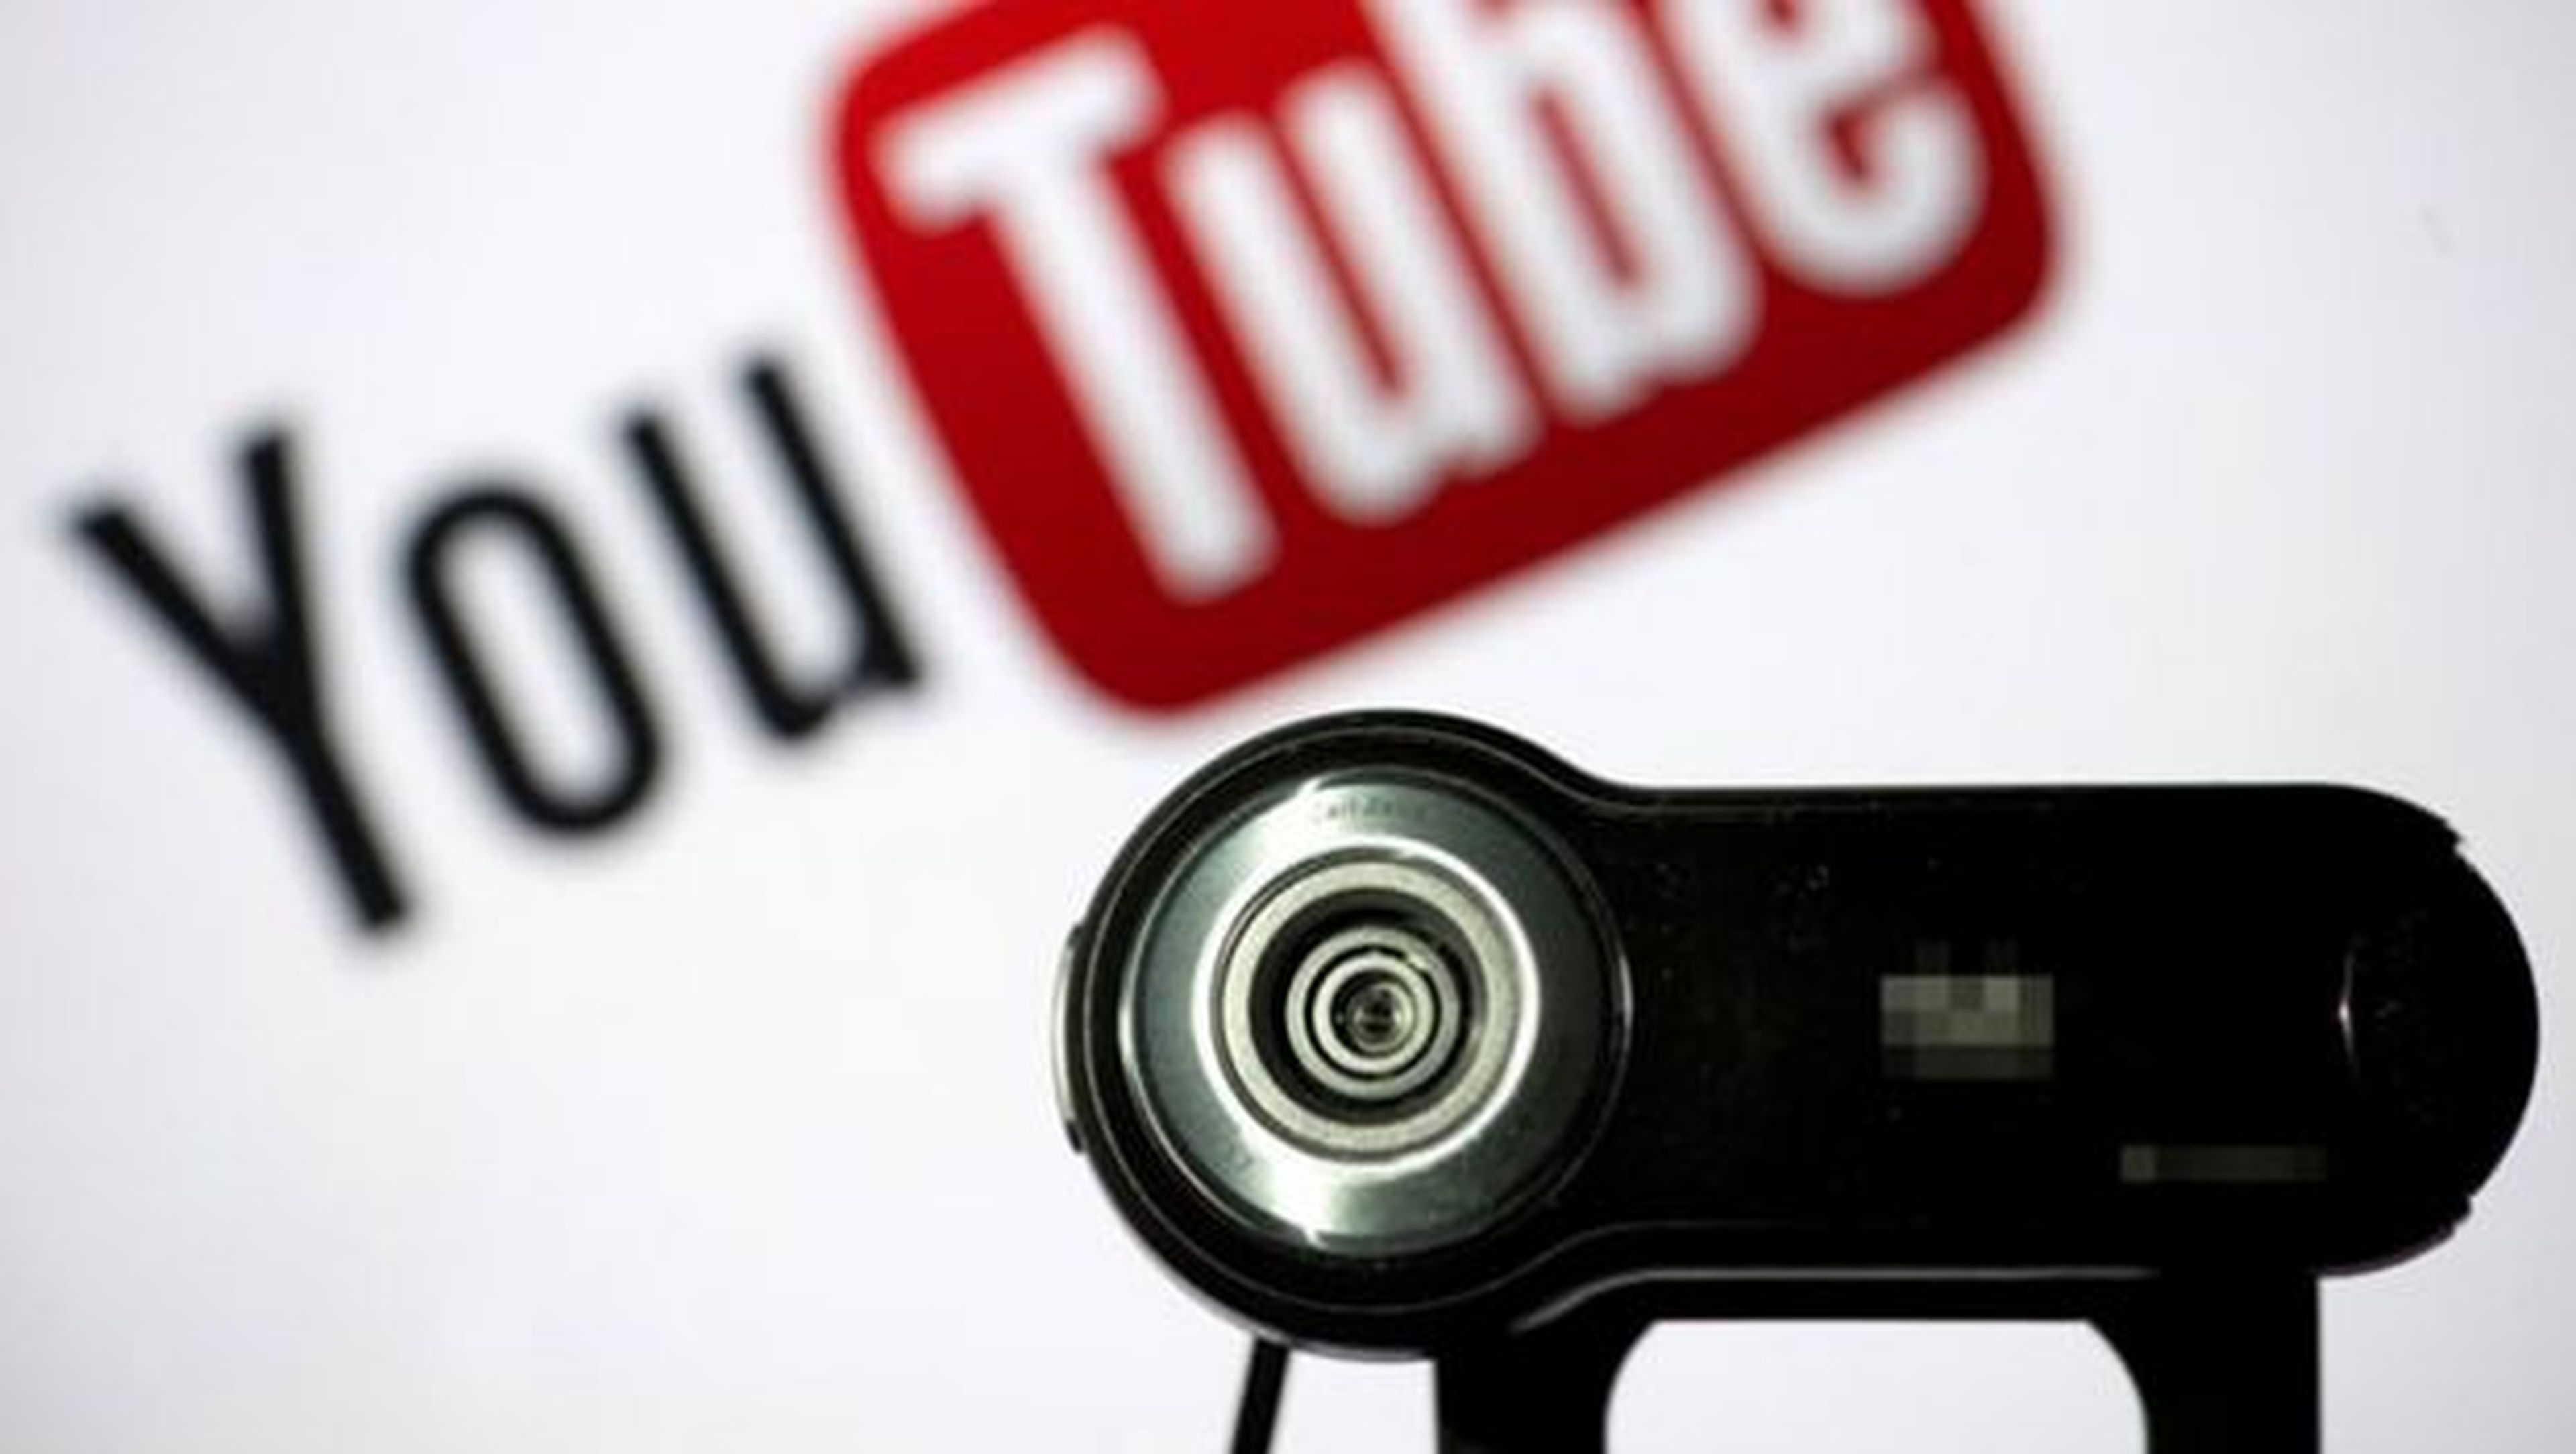 Los youtubers que no se adhieran a YouTube Red estarán mostrando su desacuerdo ante la eliminación de la publicidad de sus vídeos.